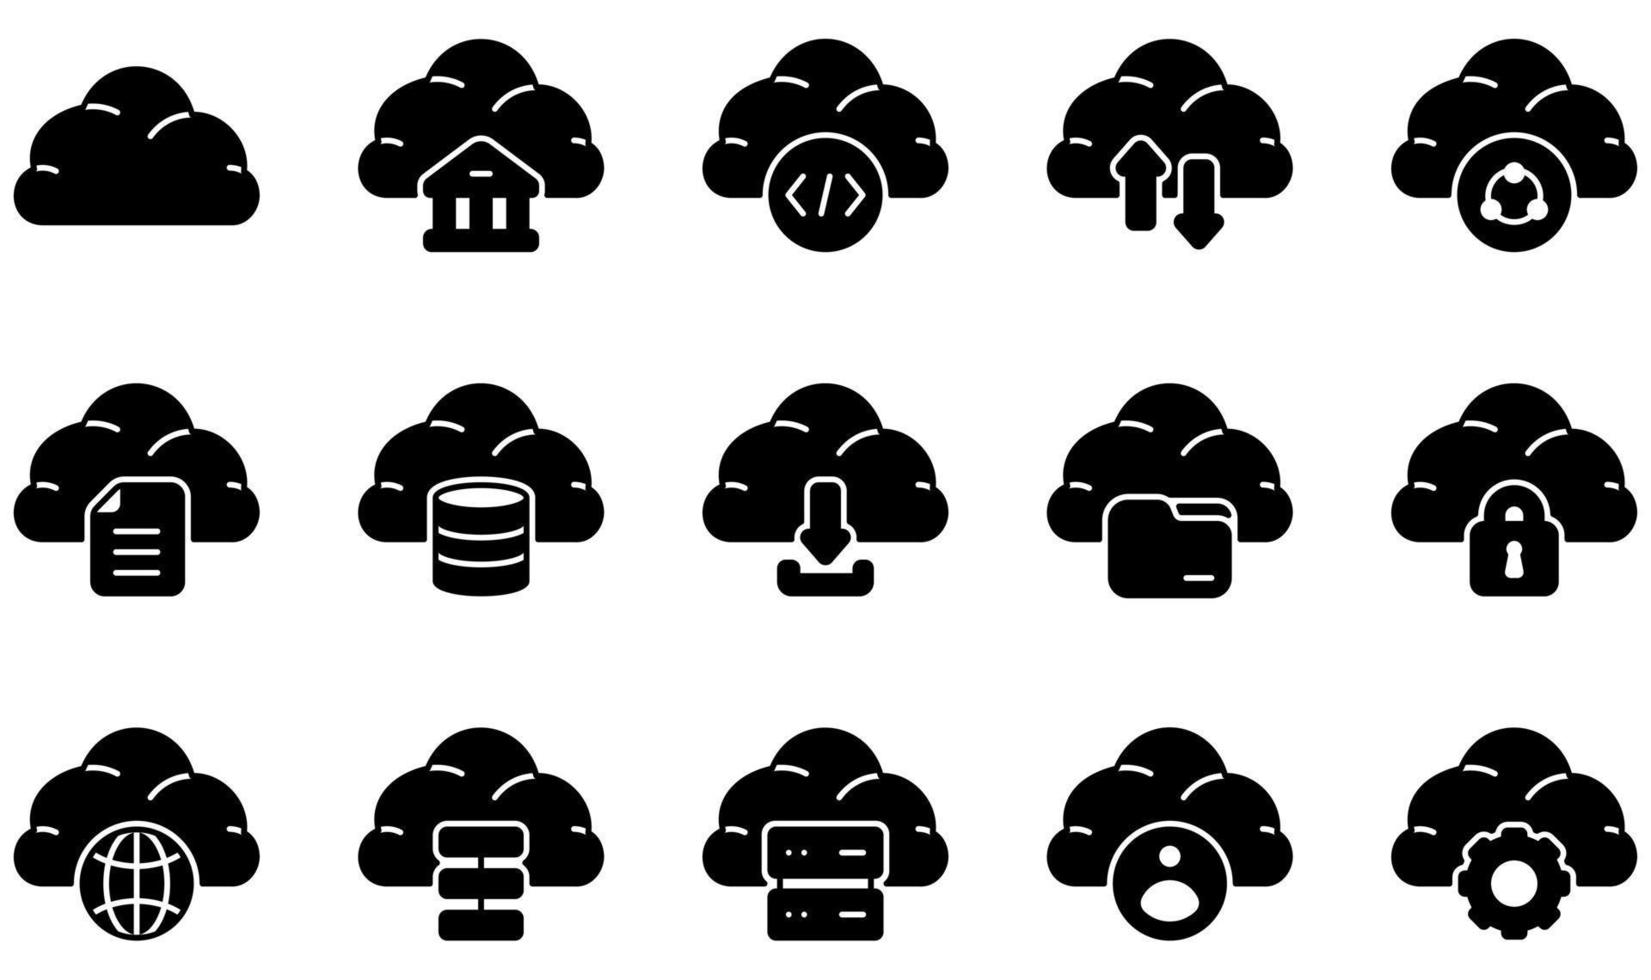 uppsättning vektorikoner relaterade till molnteknik. innehåller sådana ikoner som moln, banktjänster, kodning, cloud computing, data, databas och mer. vektor